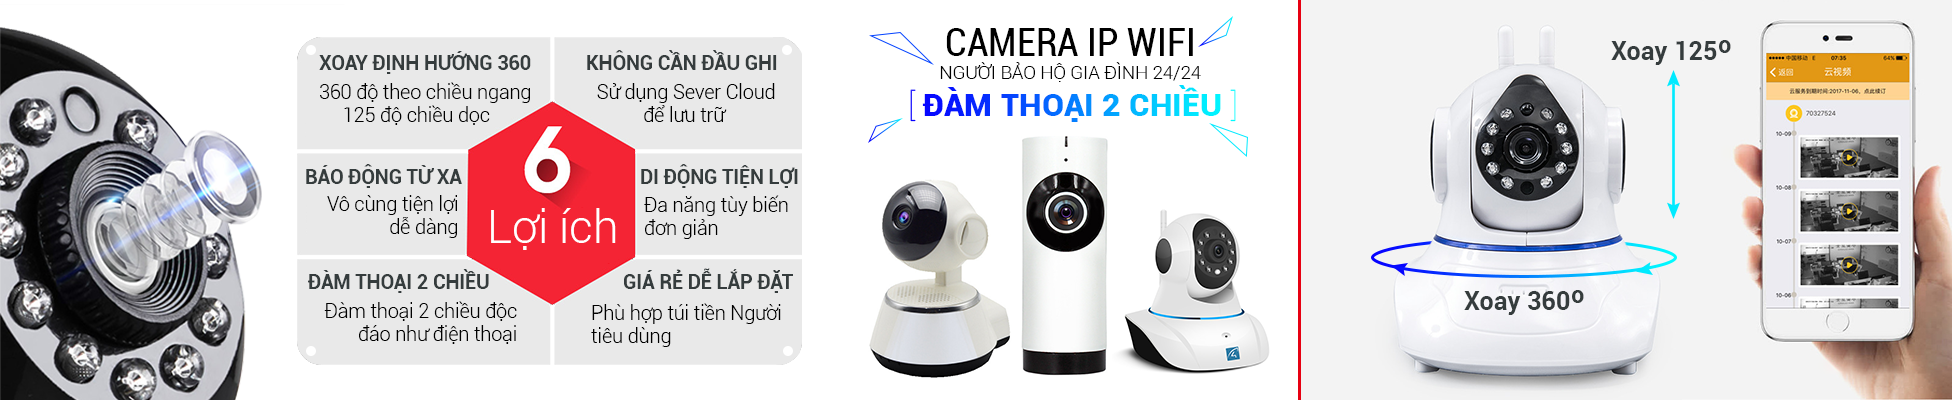 Mua camera ip 360 giá rẻ chất lượng bảo hành chính hãng tại Tp.HCM